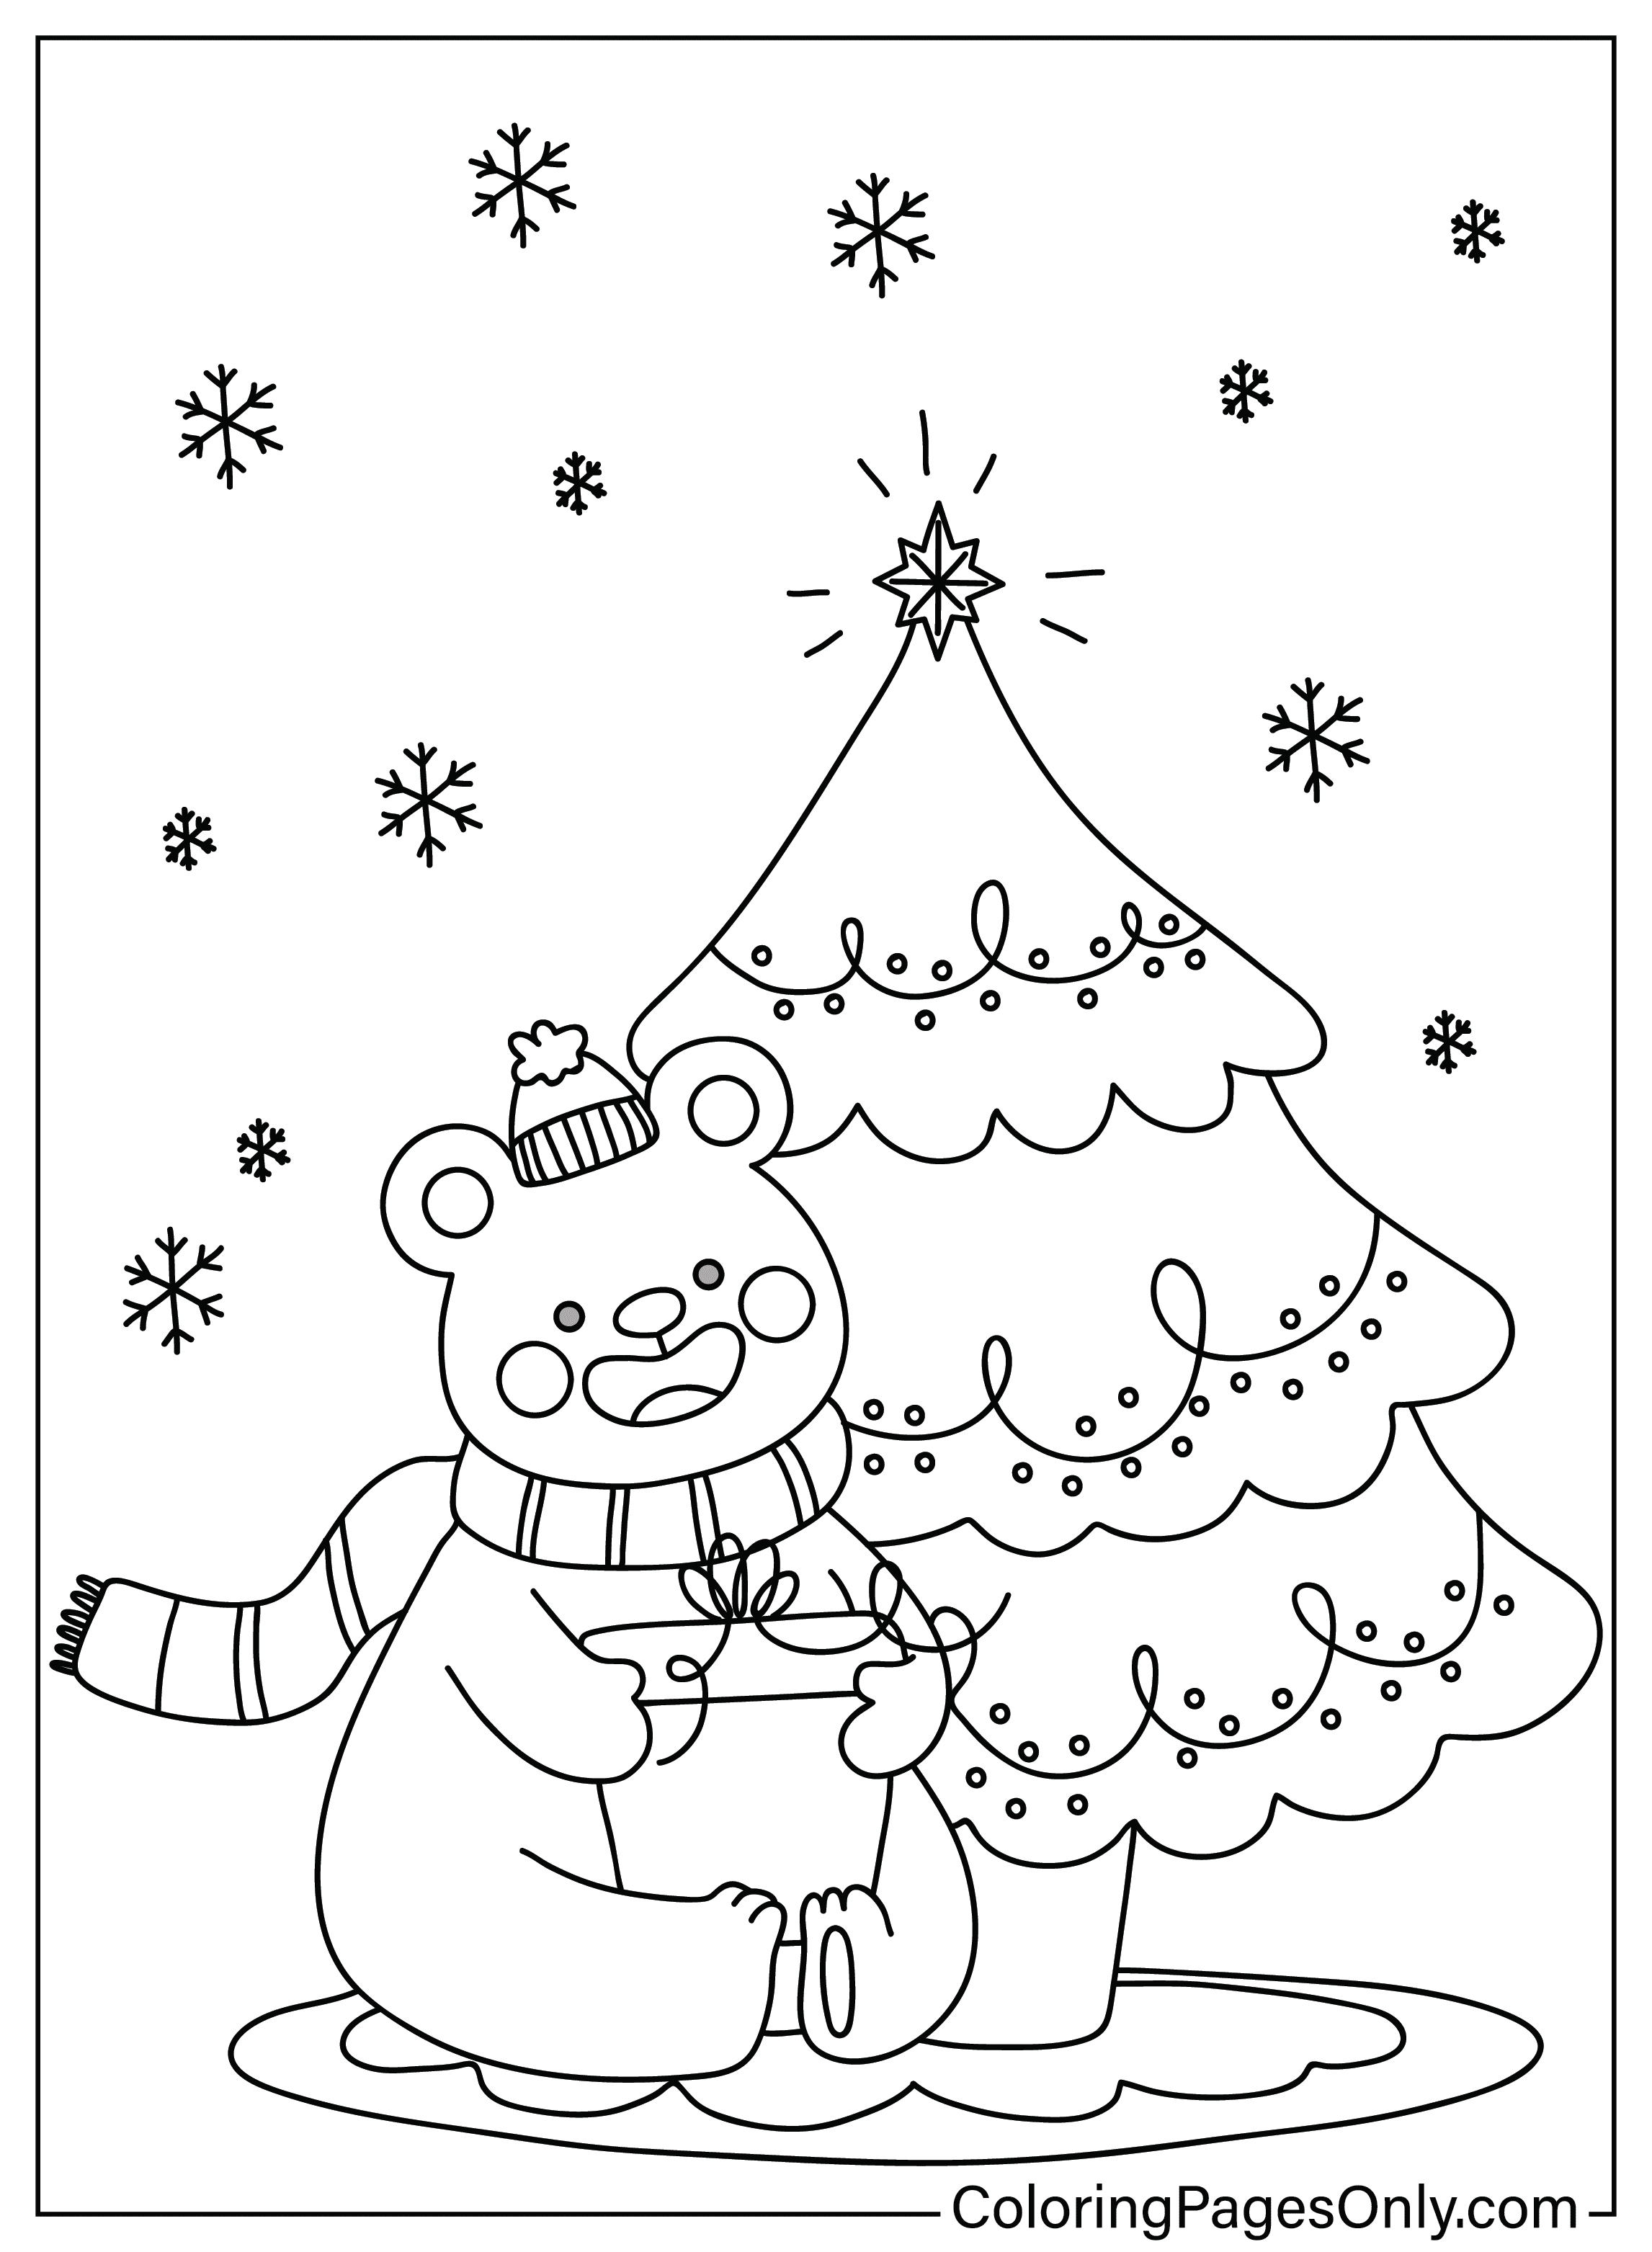 Página para colorear de Navidad linda gratis de Navidad linda